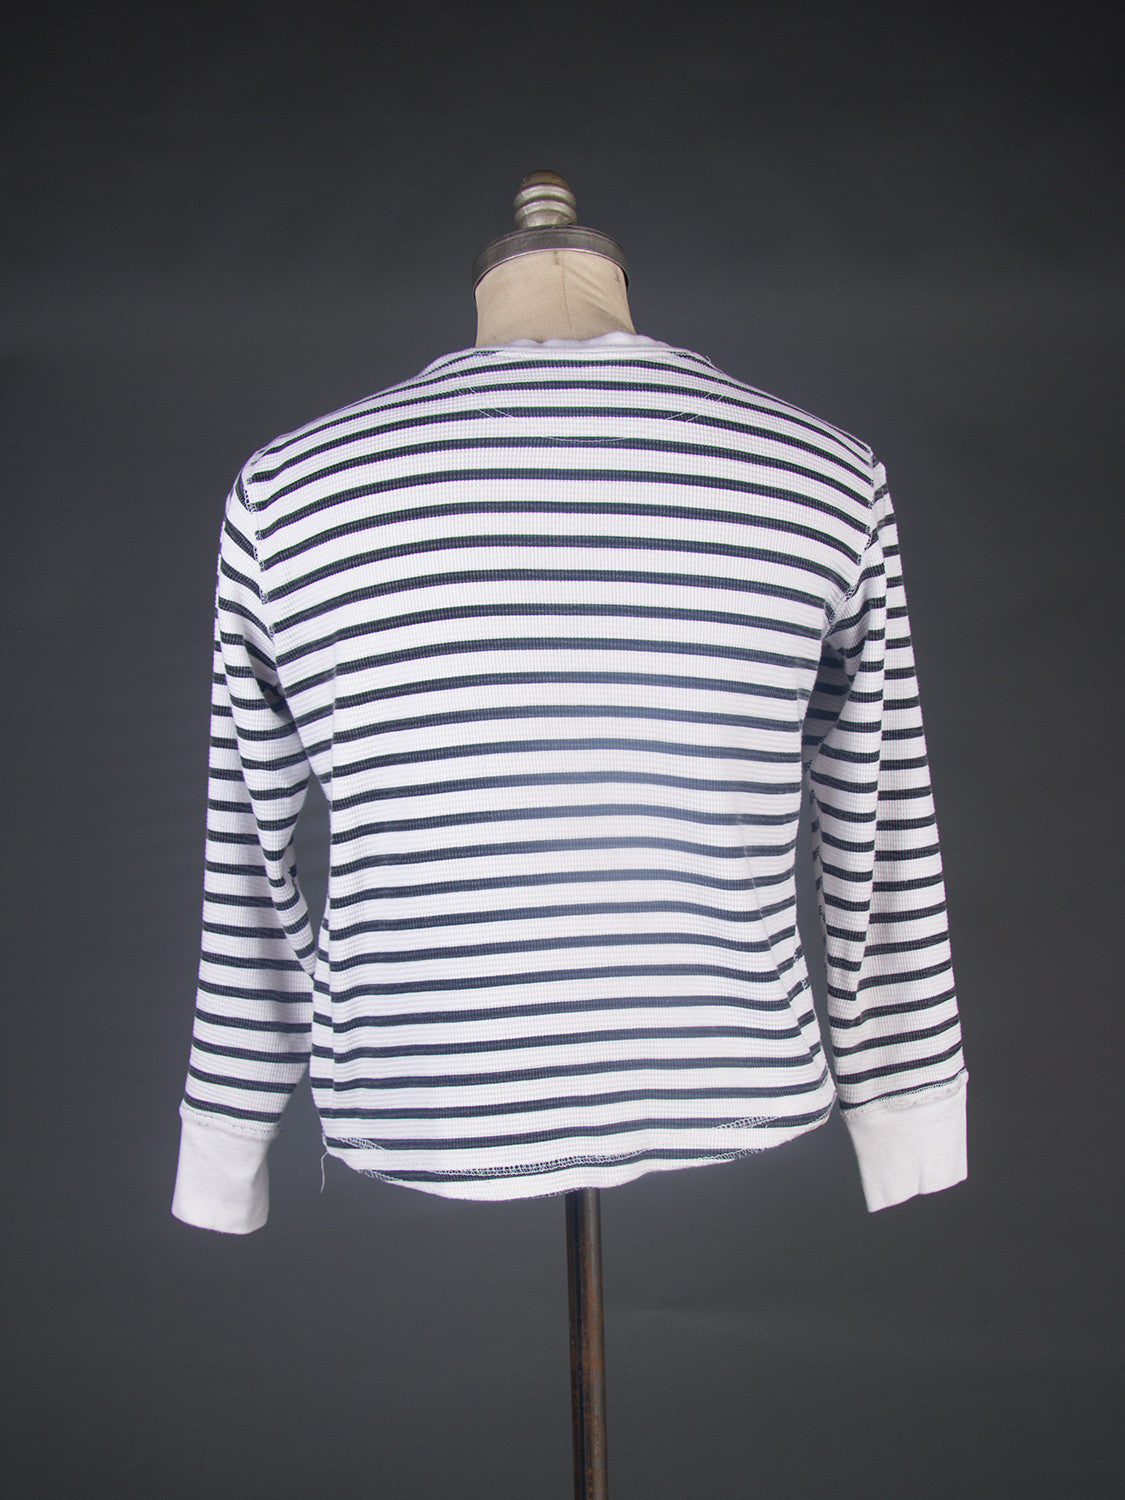 Men's Black & White Striped Henley Shirt, Medium